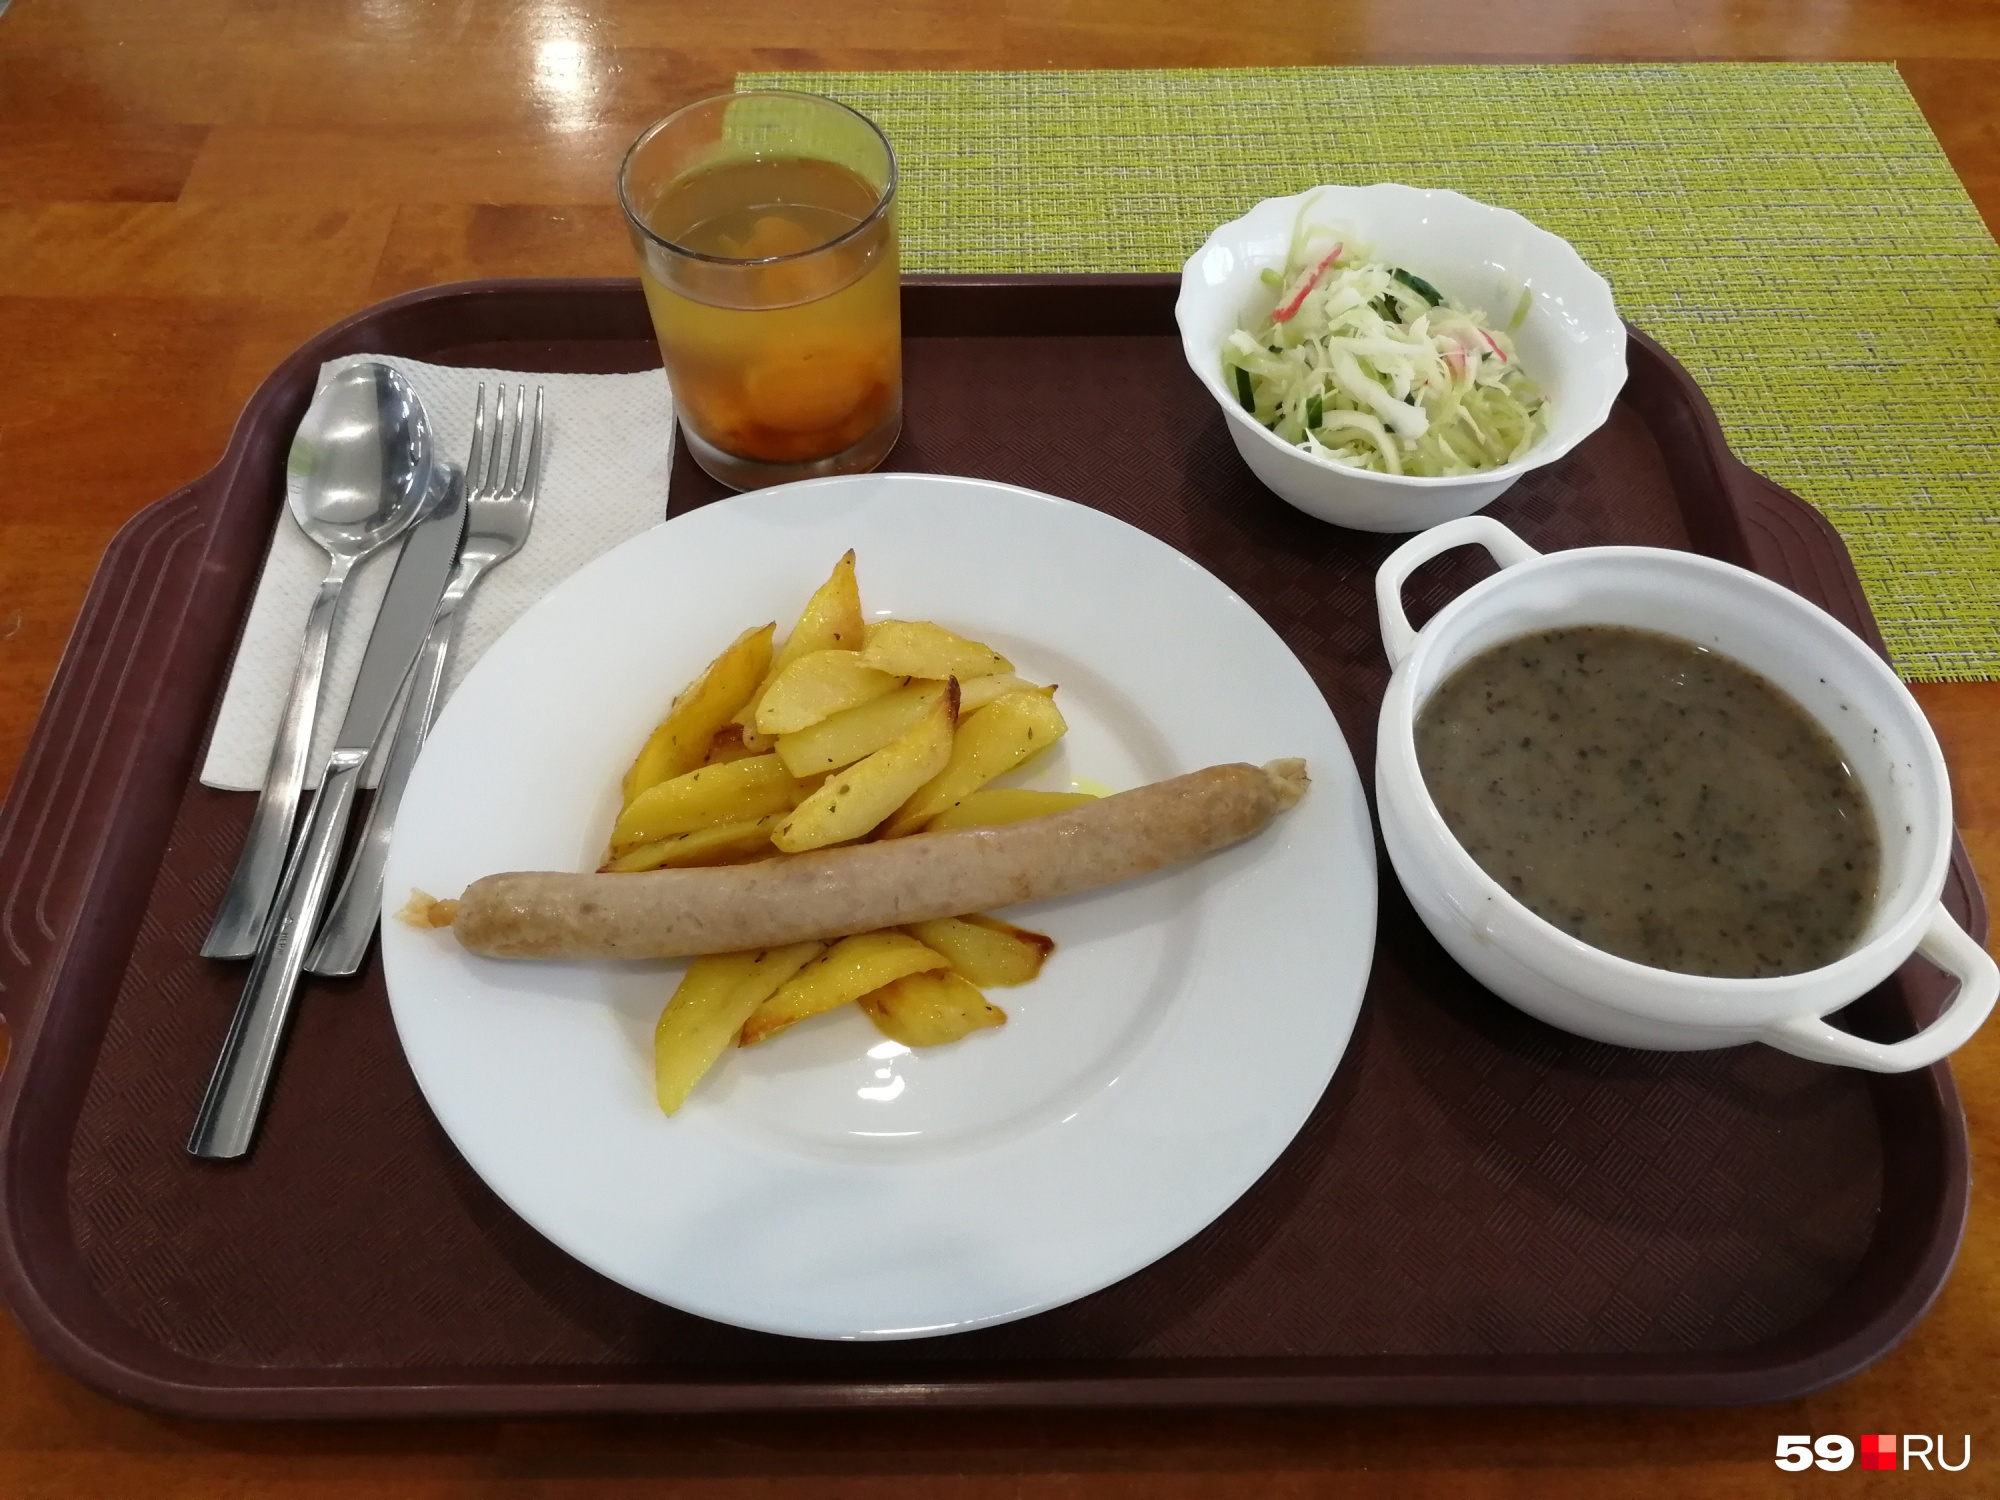 Салат, суп-пюре, картошка с колбаской и компот — 229 рублей